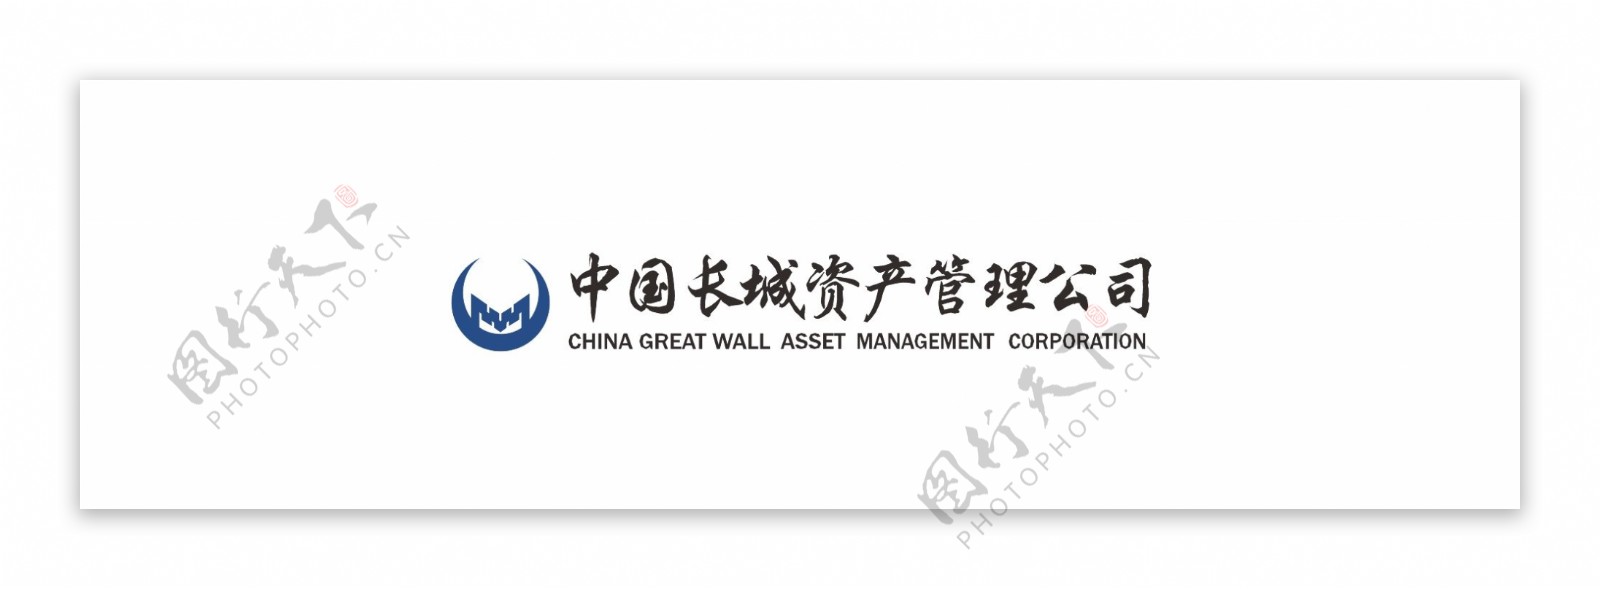 中国长城资产管理公司标题logo